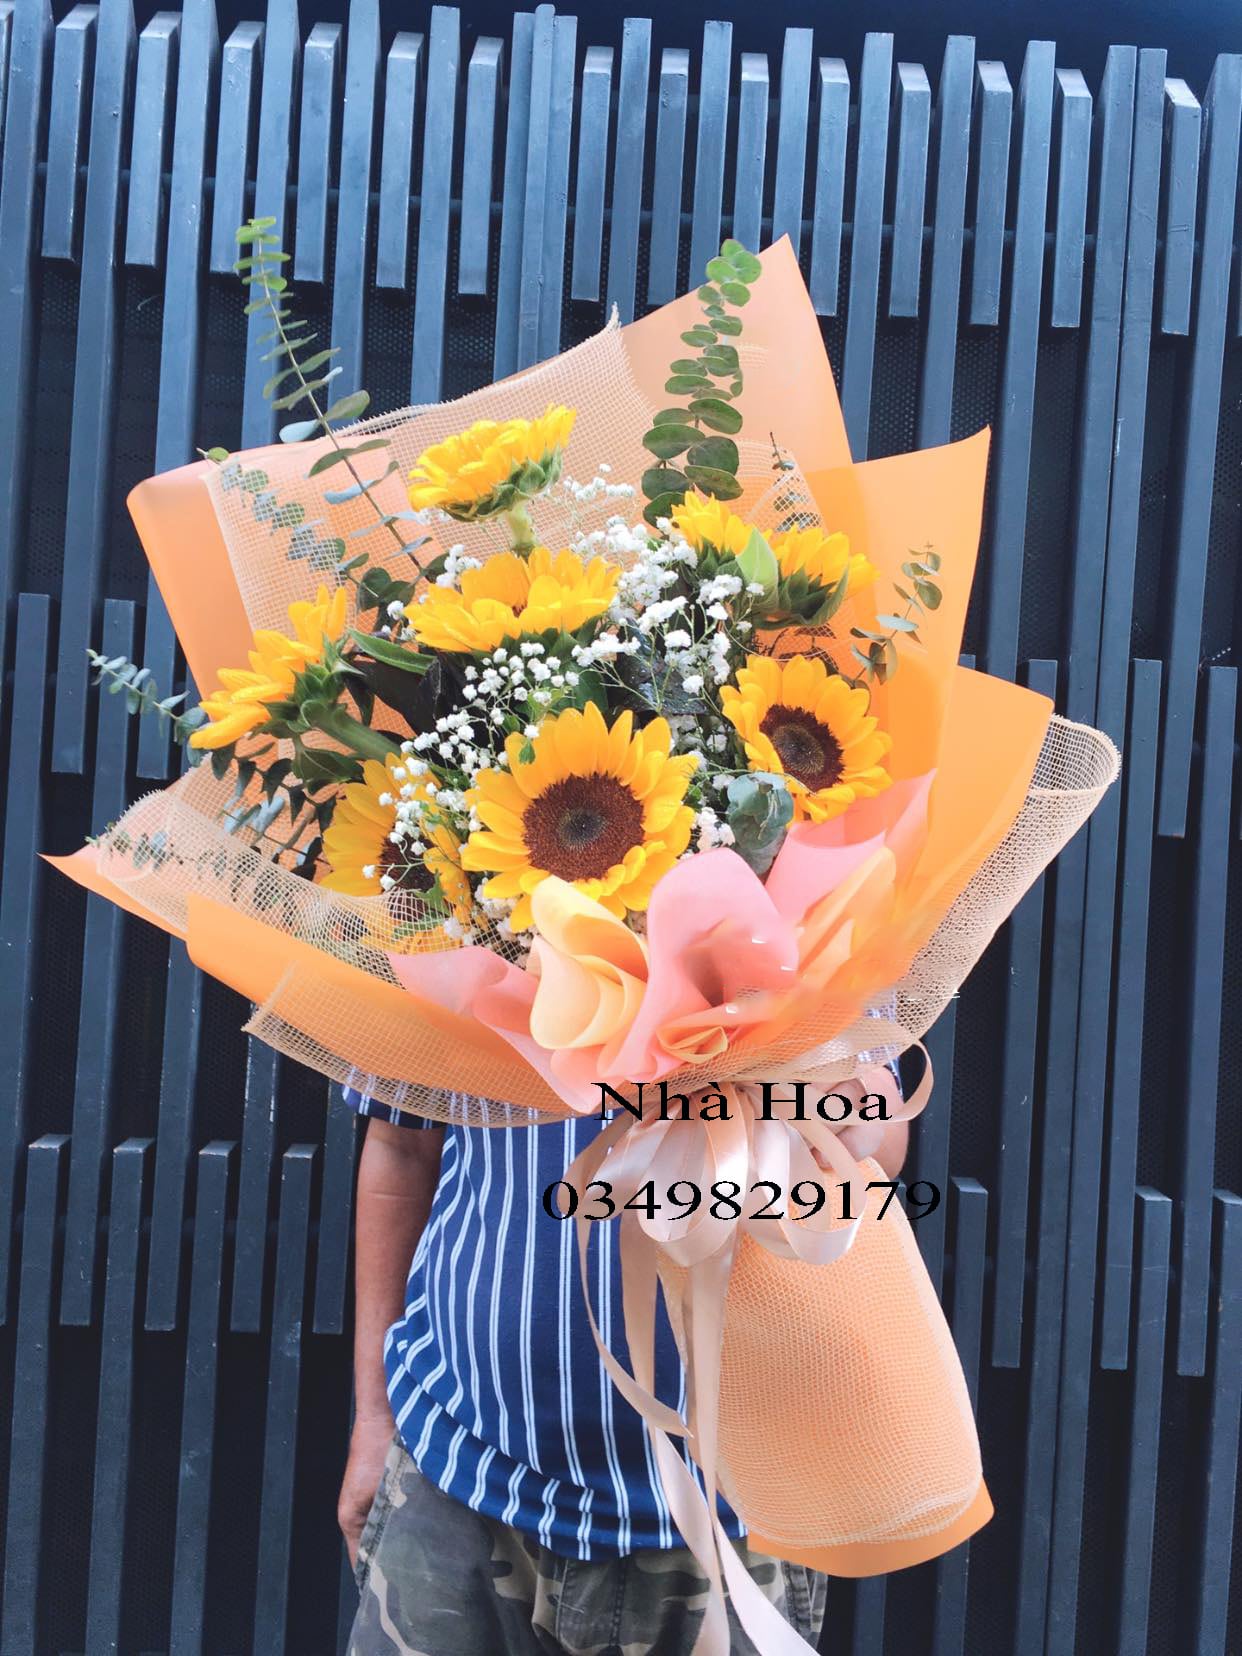 Shop hoa tươi quận Phú Nhuận giá rẻ đẹp và chất lượng tại Hồ Chí Minh